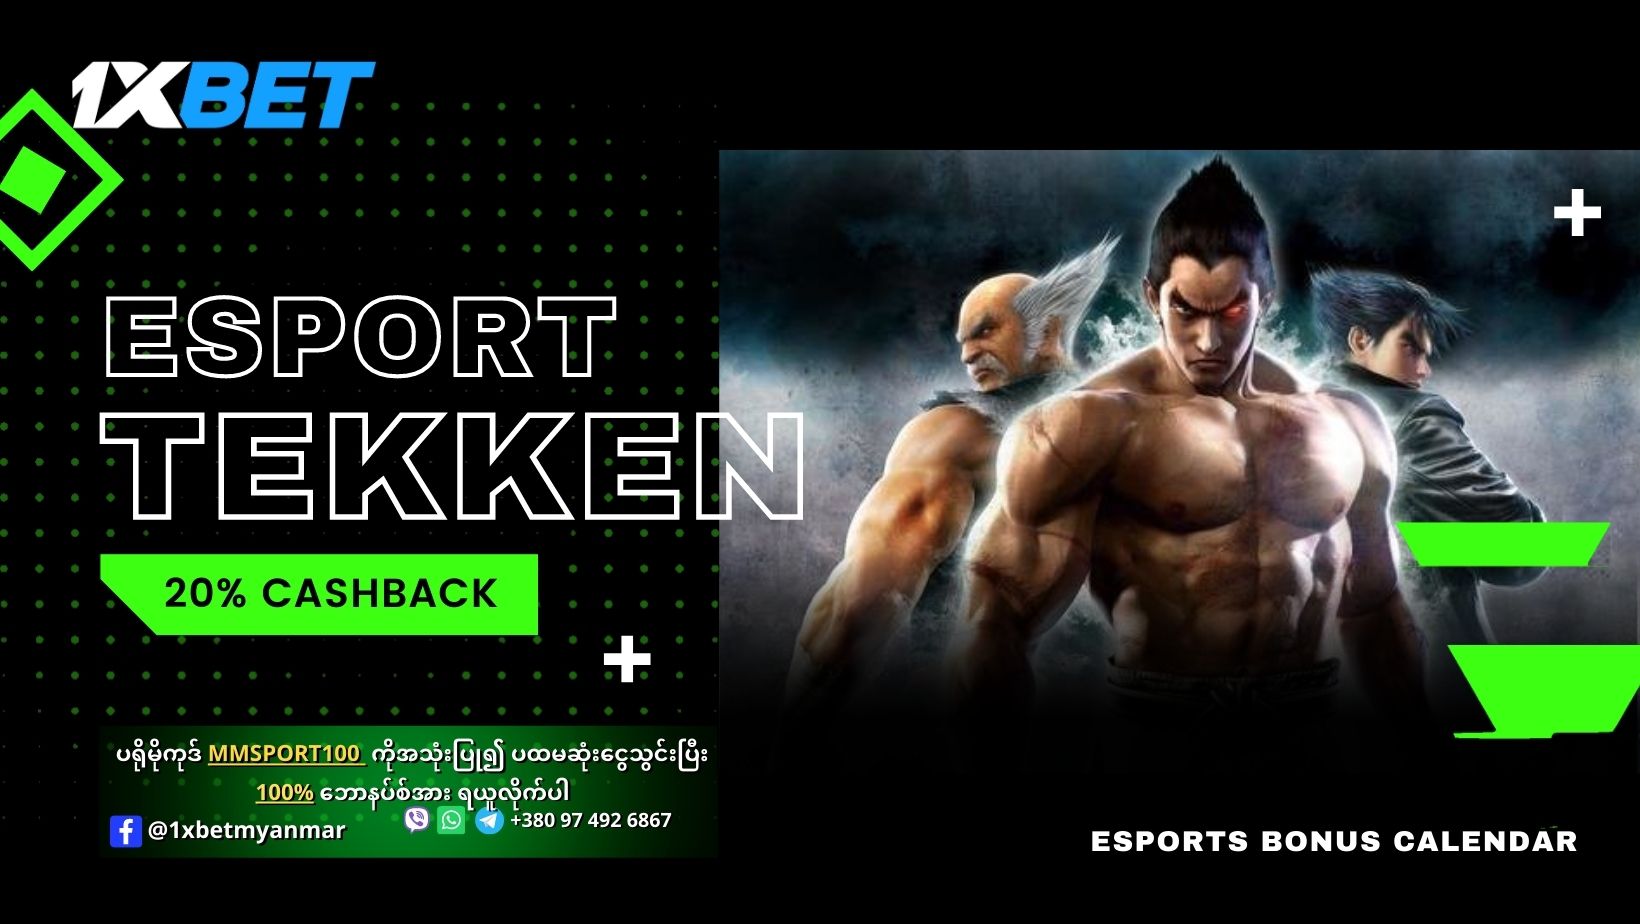 Esports Tekken 1xBet Offer